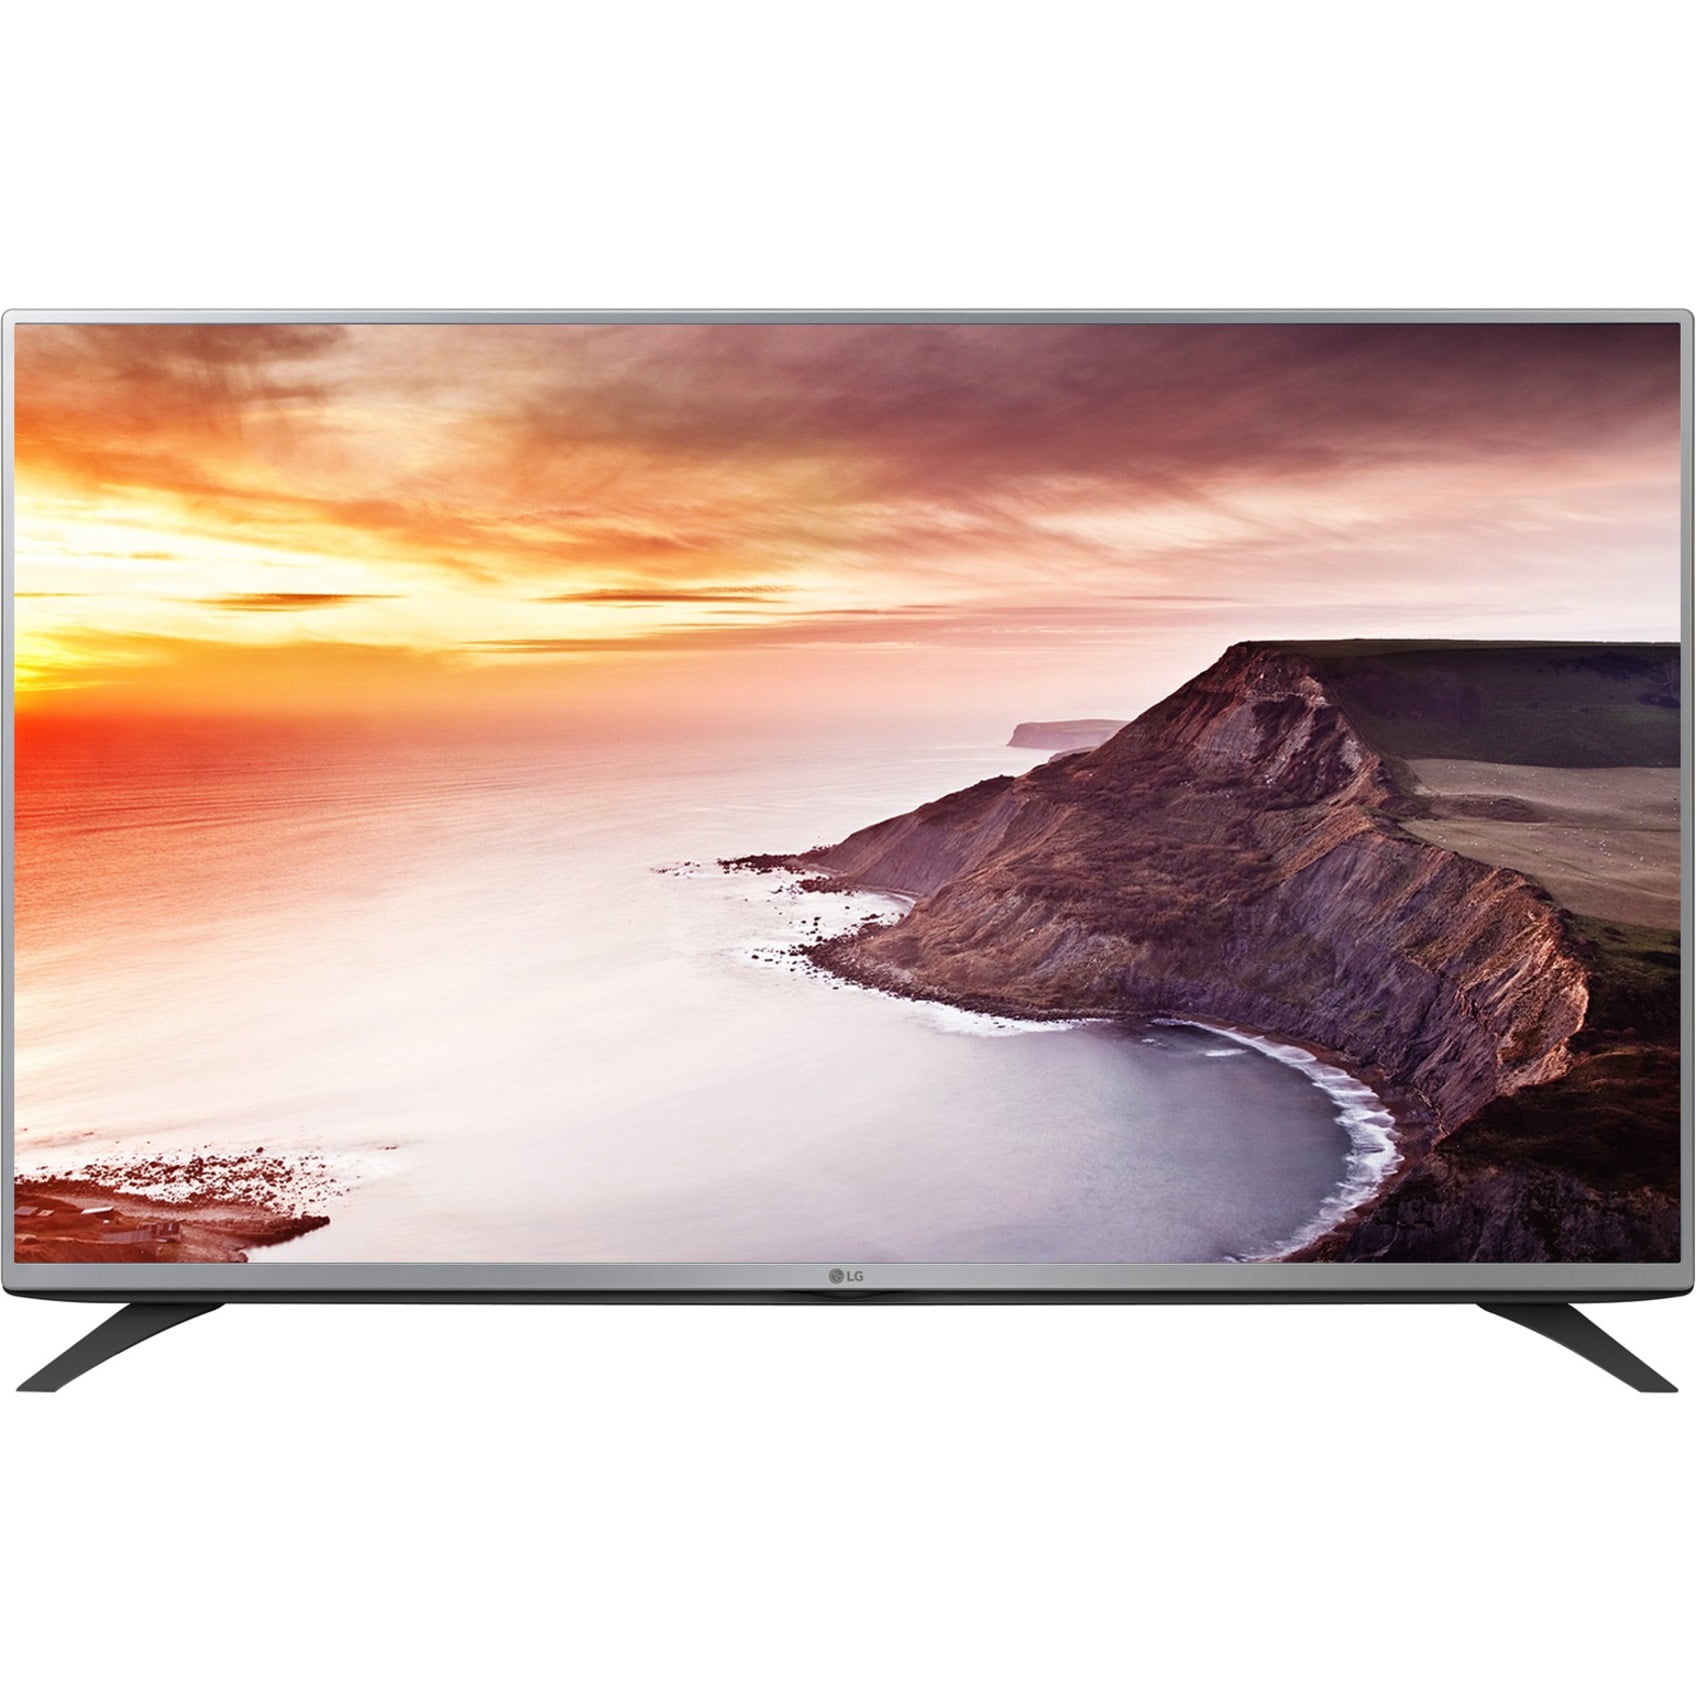 Куплю белый телевизор lg. LG 32lf551c. Телевизор LG 32lf580v 32" (2015). LG 55la860v. LG 32lf580v.